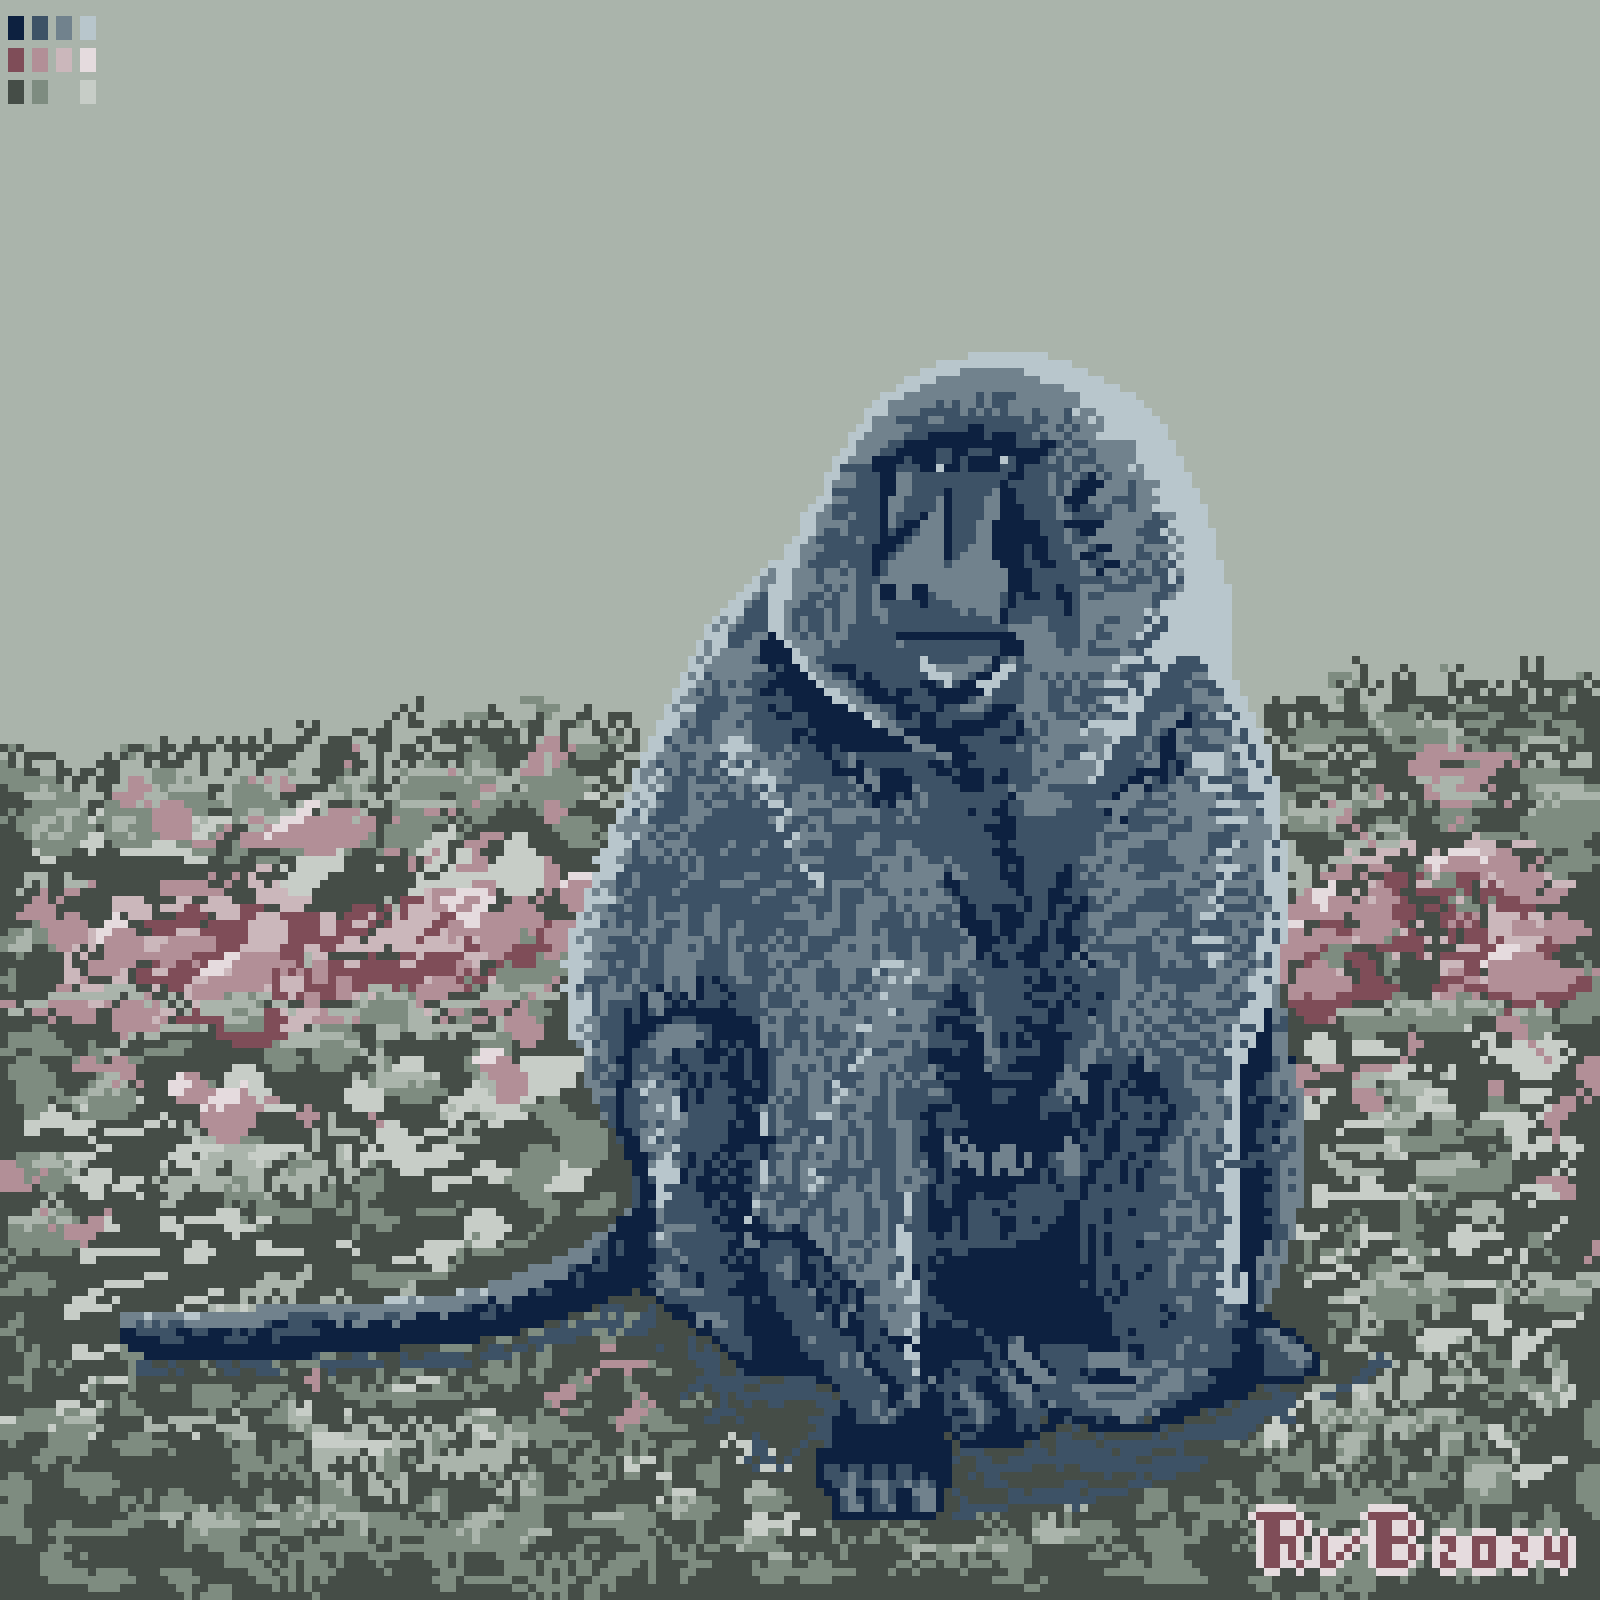 pixel art of a baboon